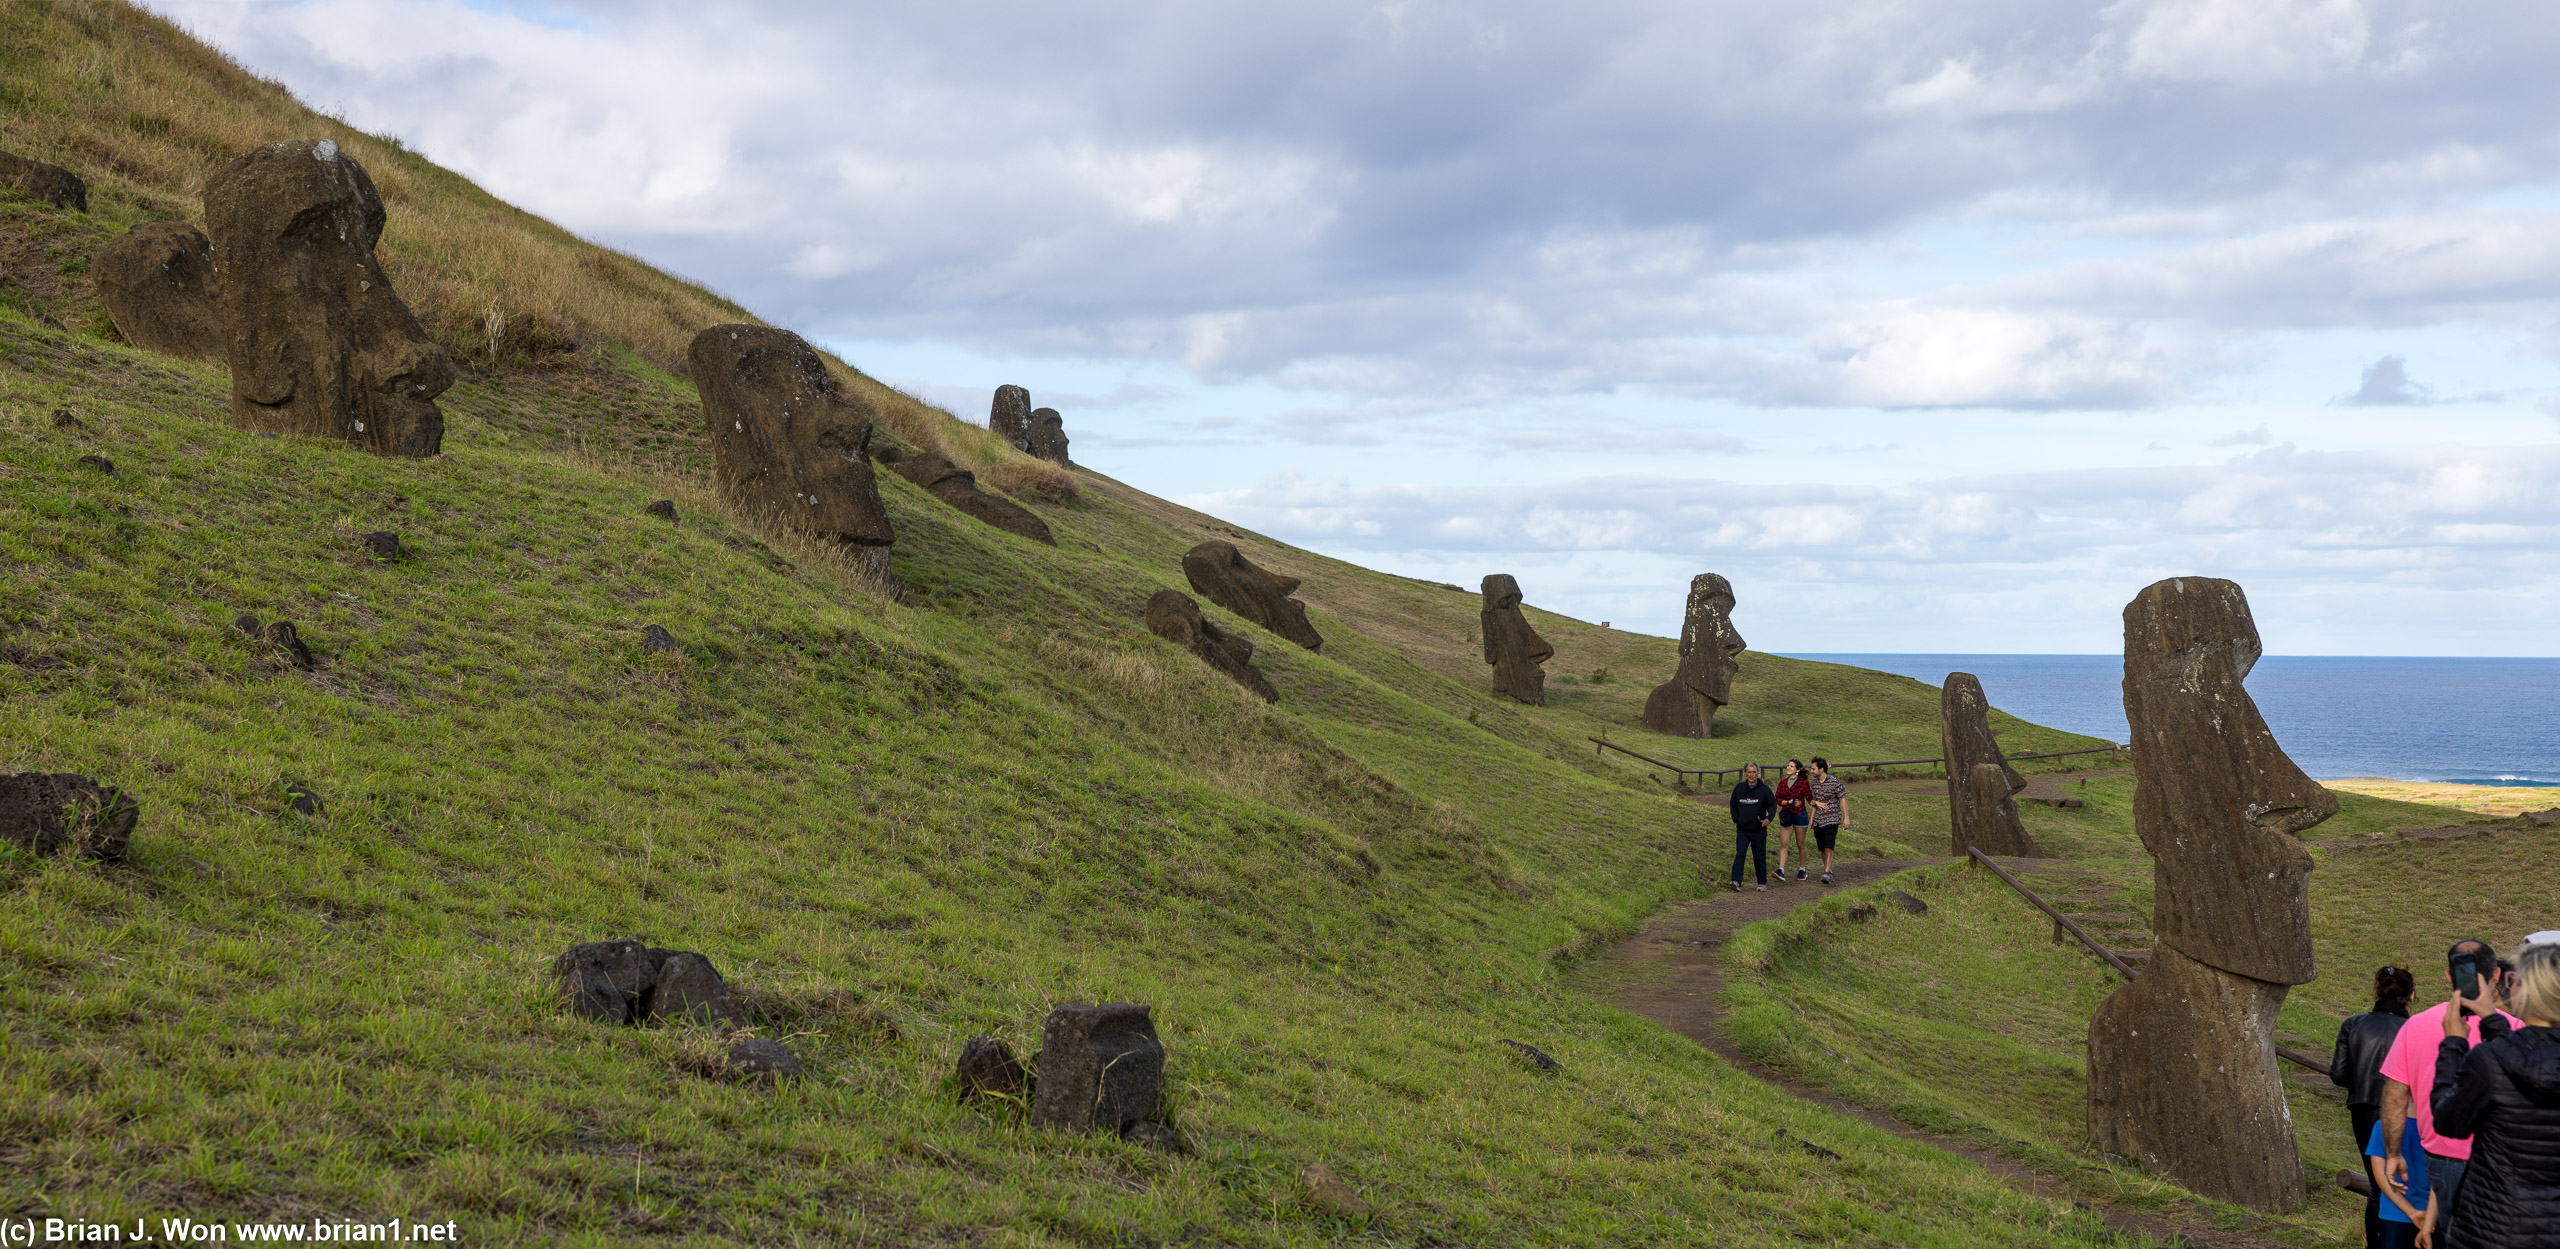 So. Many. Moai.